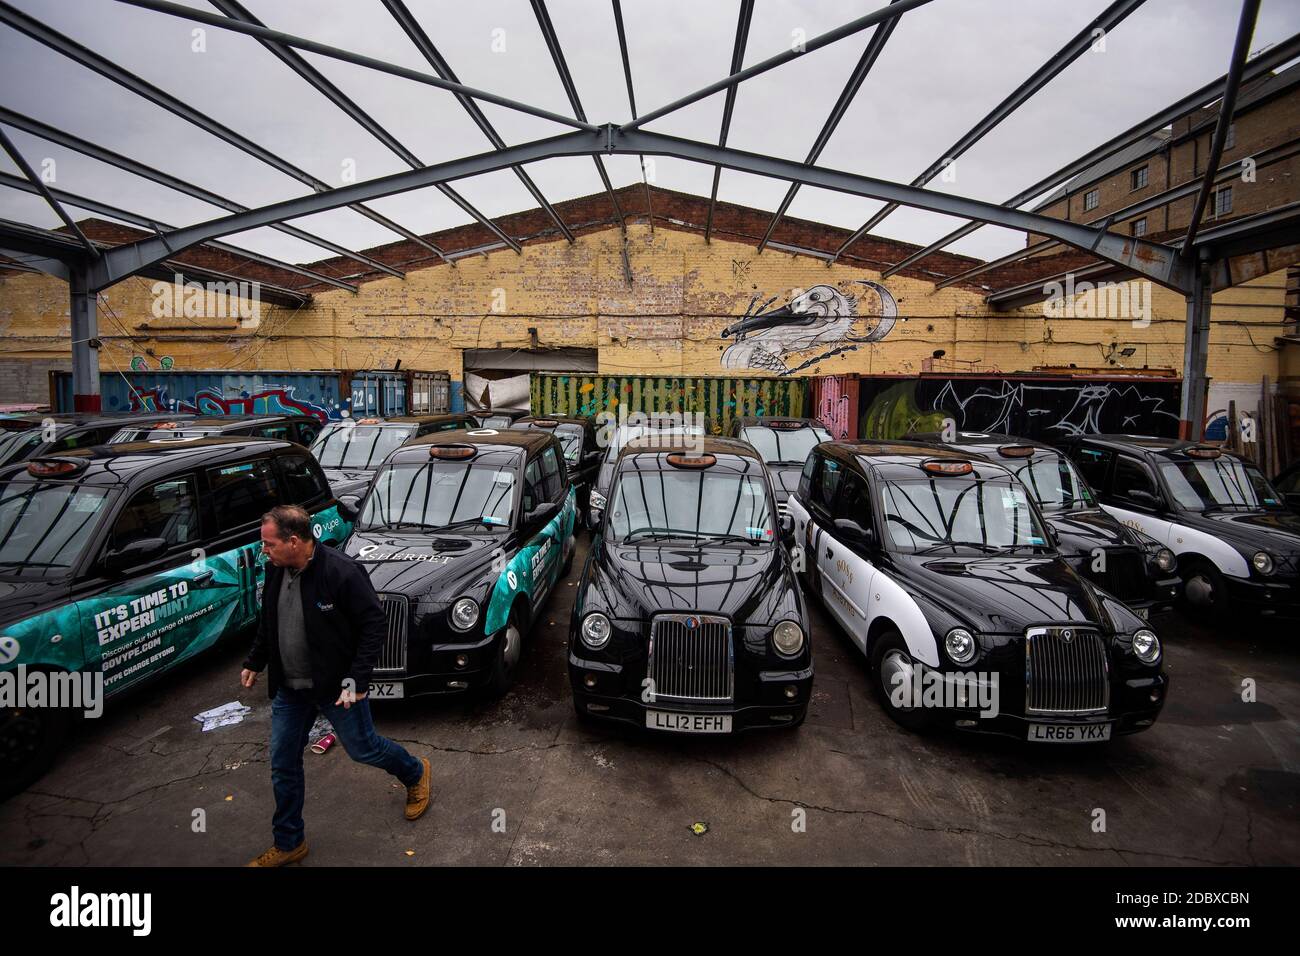 Ein Mitarbeiter geht durch einen Hof mit schwarzen Taxis in Sherbet London im Osten Londons, wo ein großer Teil seiner Mietflotte von Londoner Taxis aufgrund eines starken Nachfragerückgangs aufbaut, da die Beschränkungen des Coronavirus die Reise- und Büroarbeit weiter reduzieren. Stockfoto